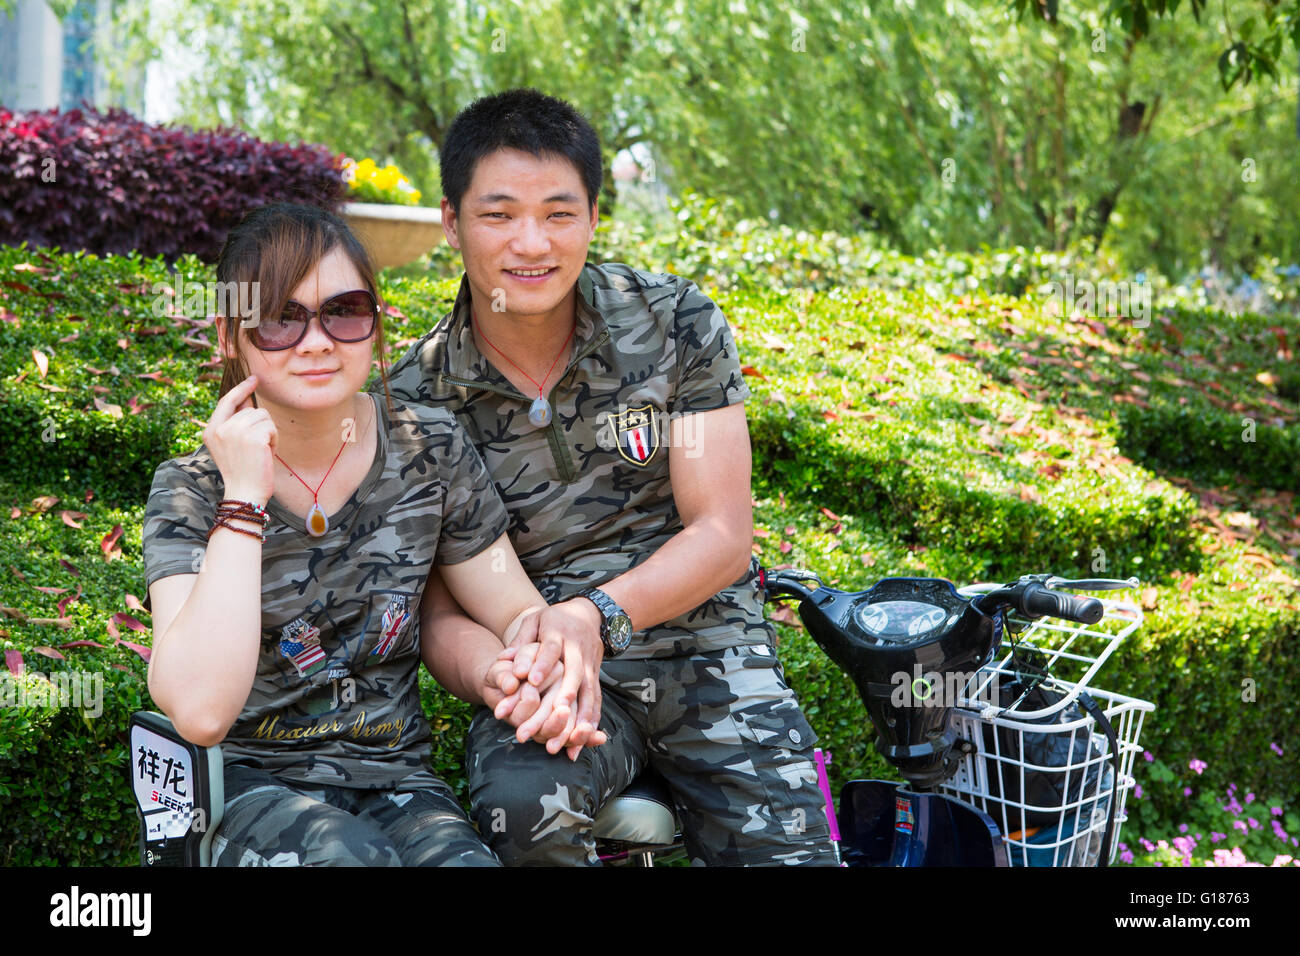 Junge Chinesen romantische Paar auf einem Roller, Hand in Hand im Park eine Militär Armee uniform tragen Stockfoto